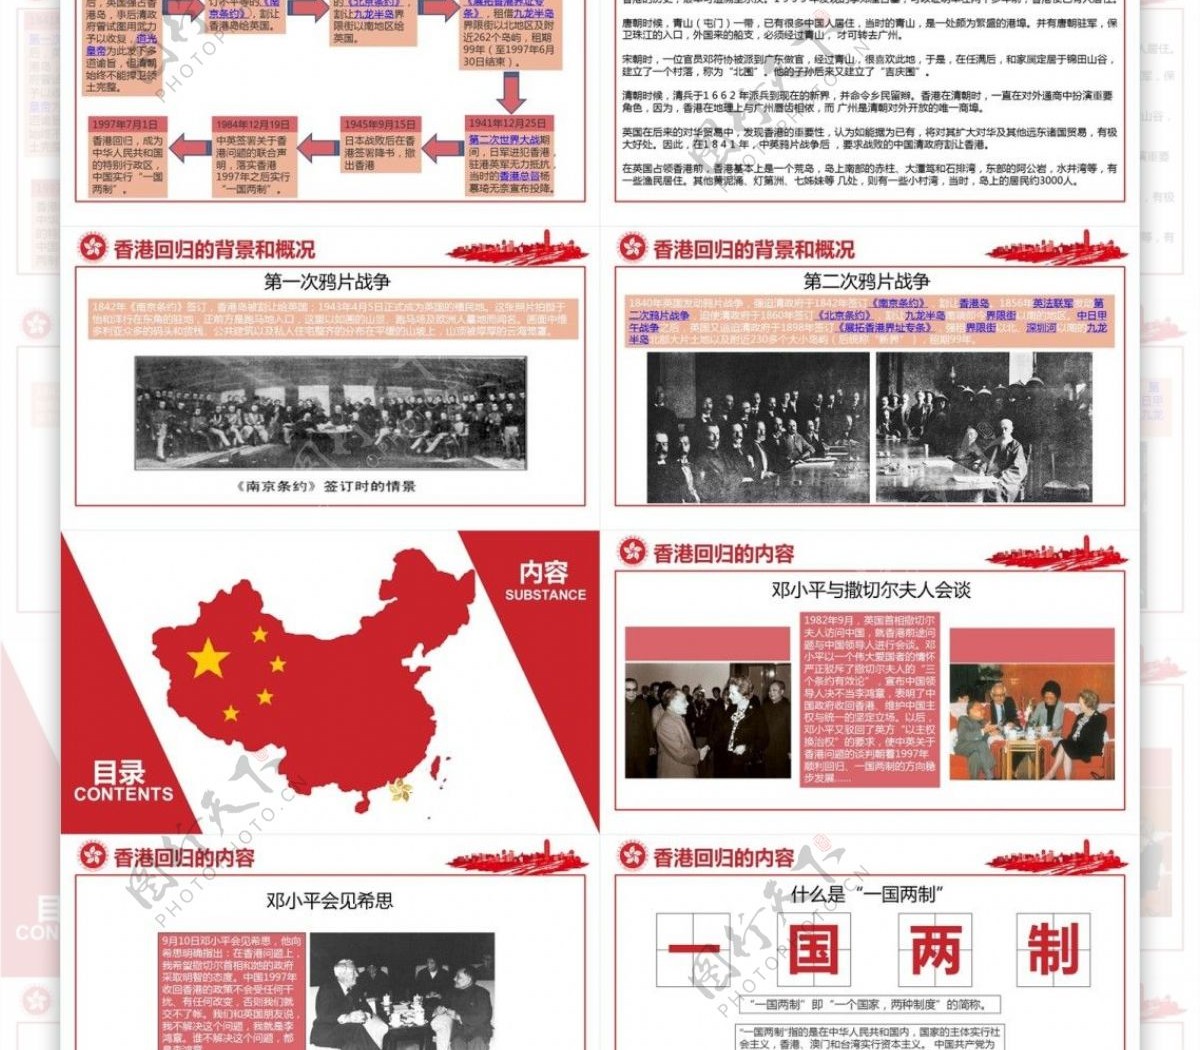 中国红党建香港回归20周年PTP模板设计